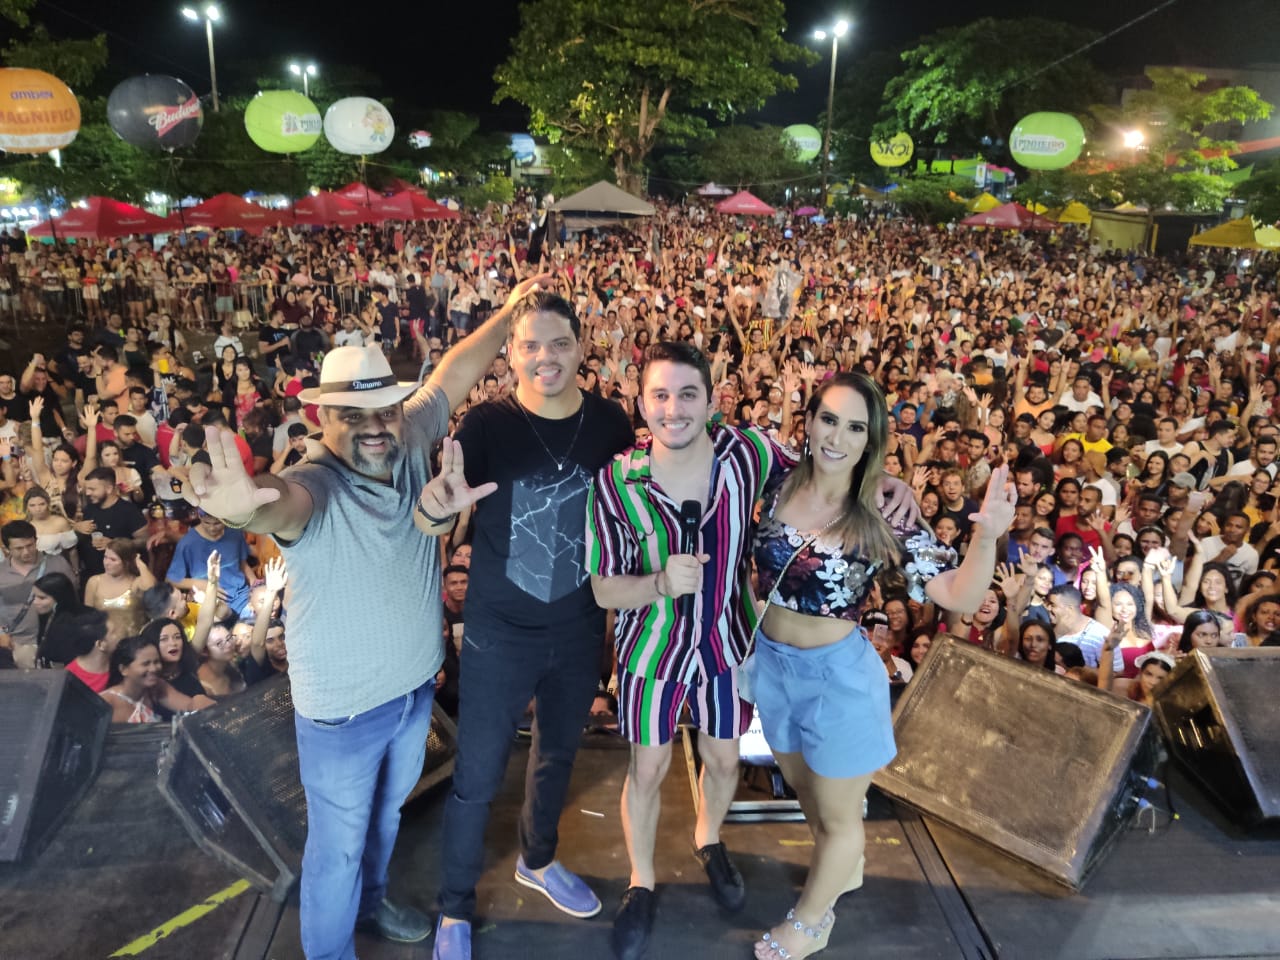 Thaiza Hortegal elogia o Carnaval de Pinheiro